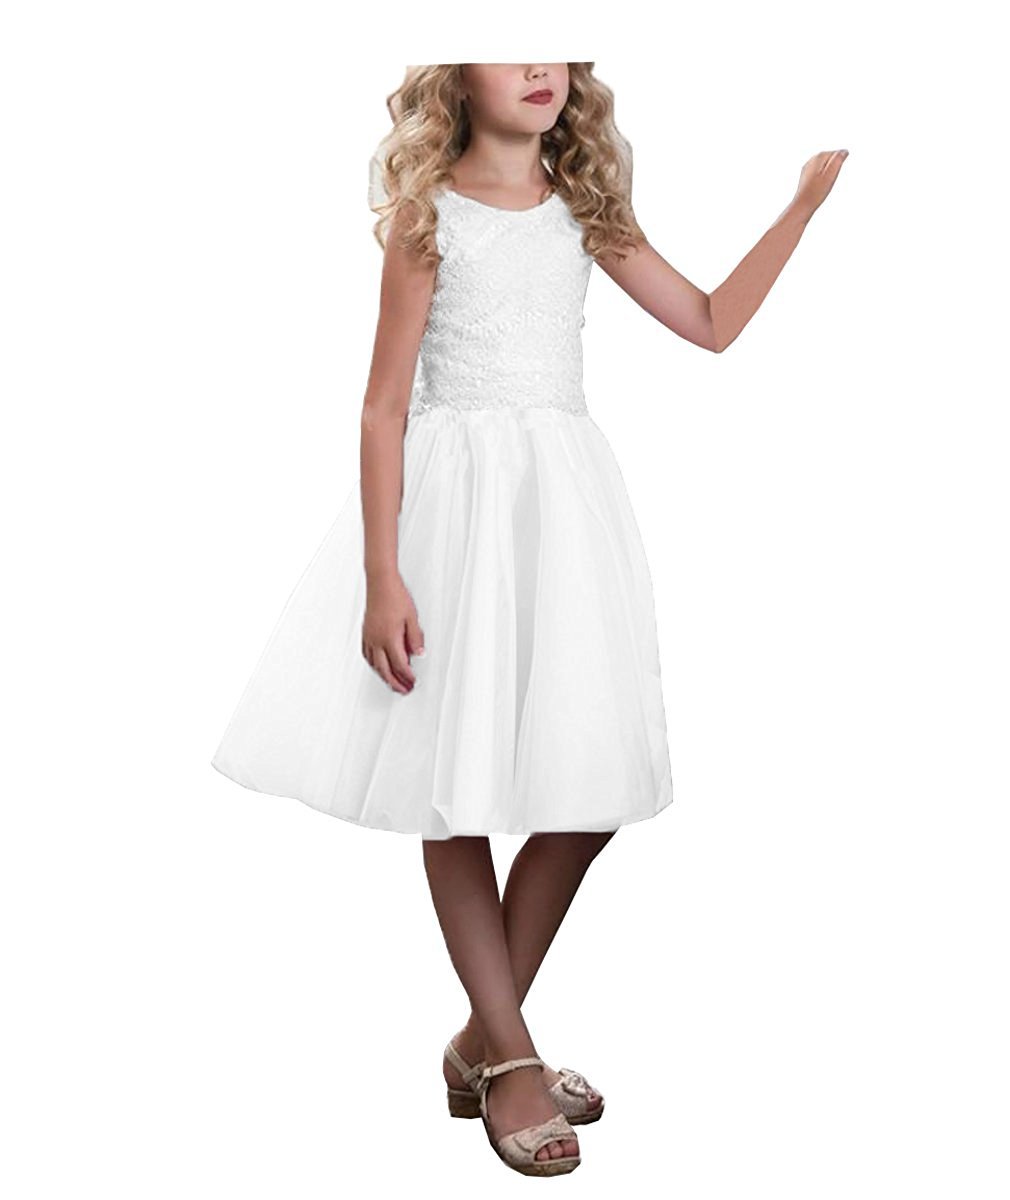 CLLA dress Mädchen Hochzeit Blumenmädchen Kleider Knielänge Partyskleid Kinderkleid Kommunionkleid Ballkleid(Weiß,8-9 Jahre)